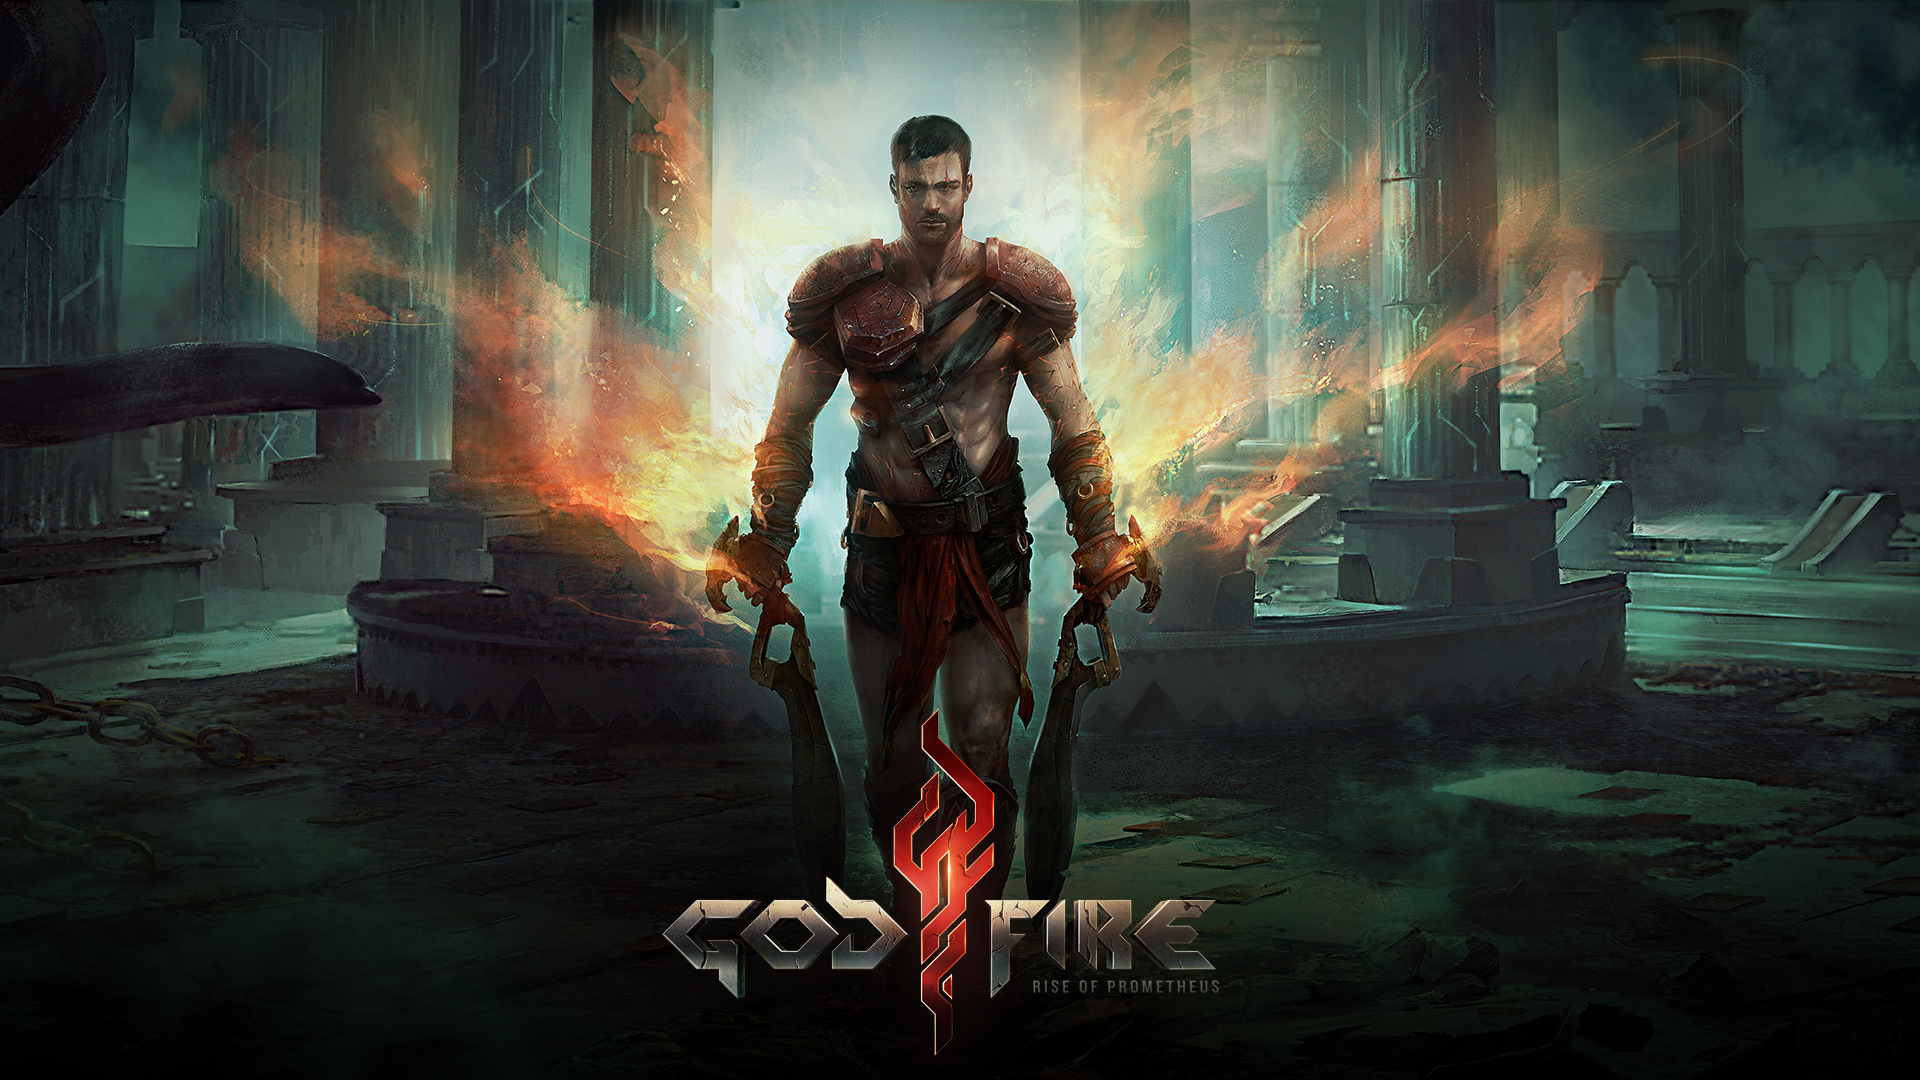 Godfire: Rise of Prometheus